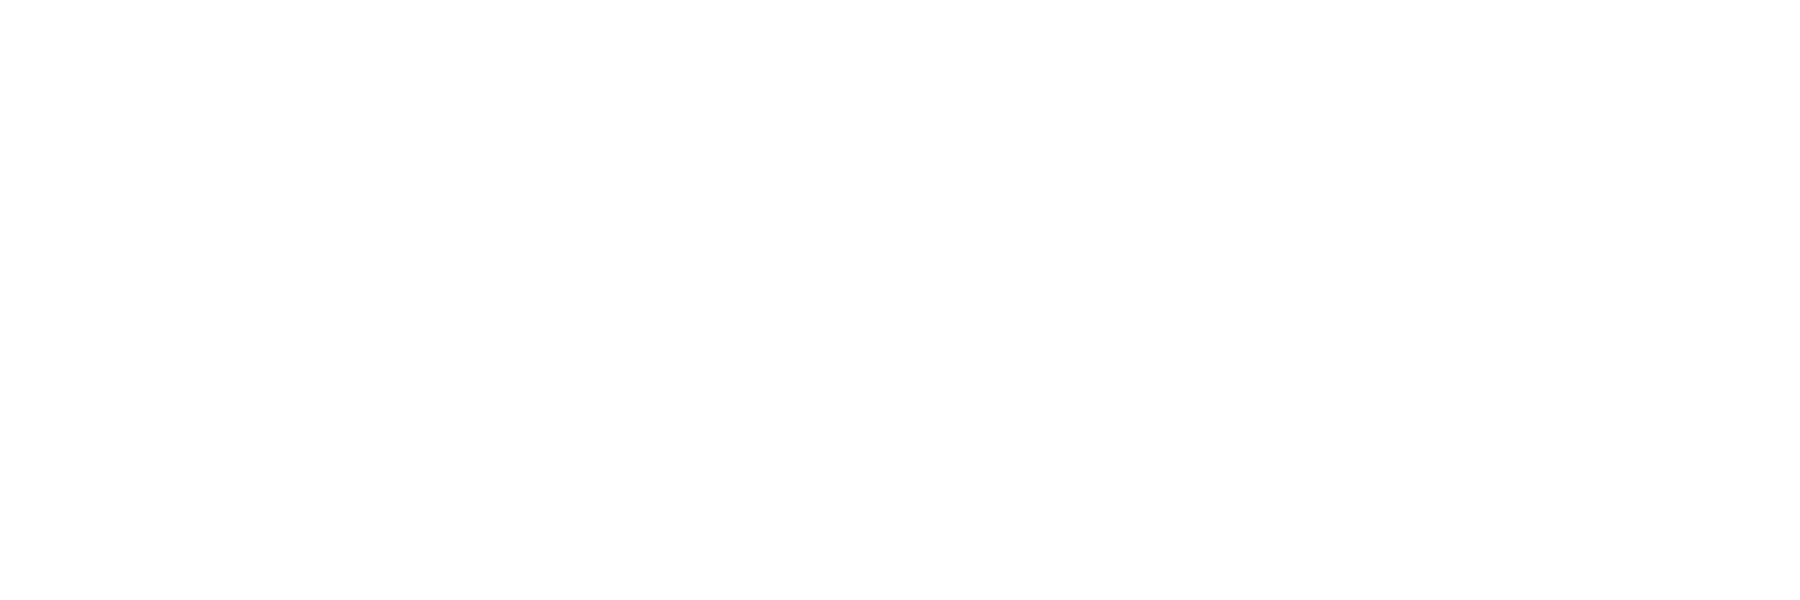 HEYTEA